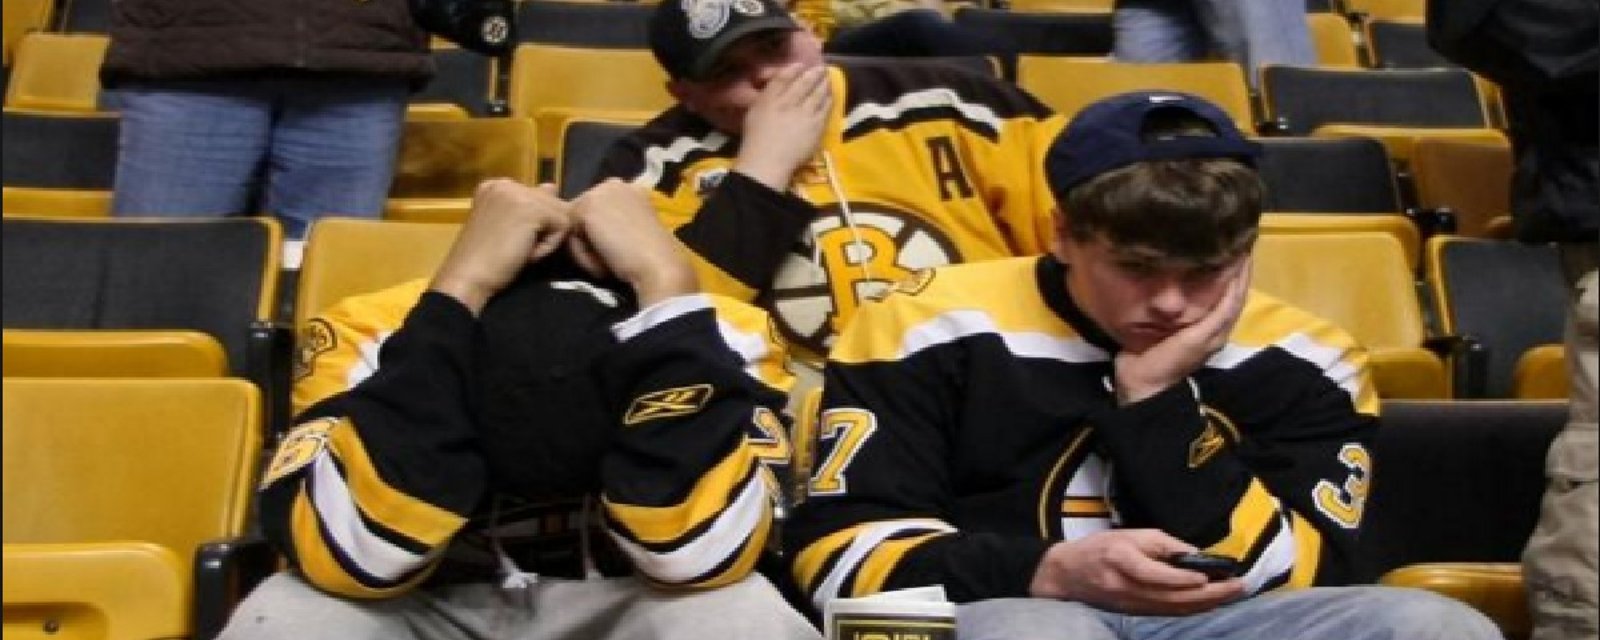 Les Bruins se font ramasser sur les réseaux sociaux!